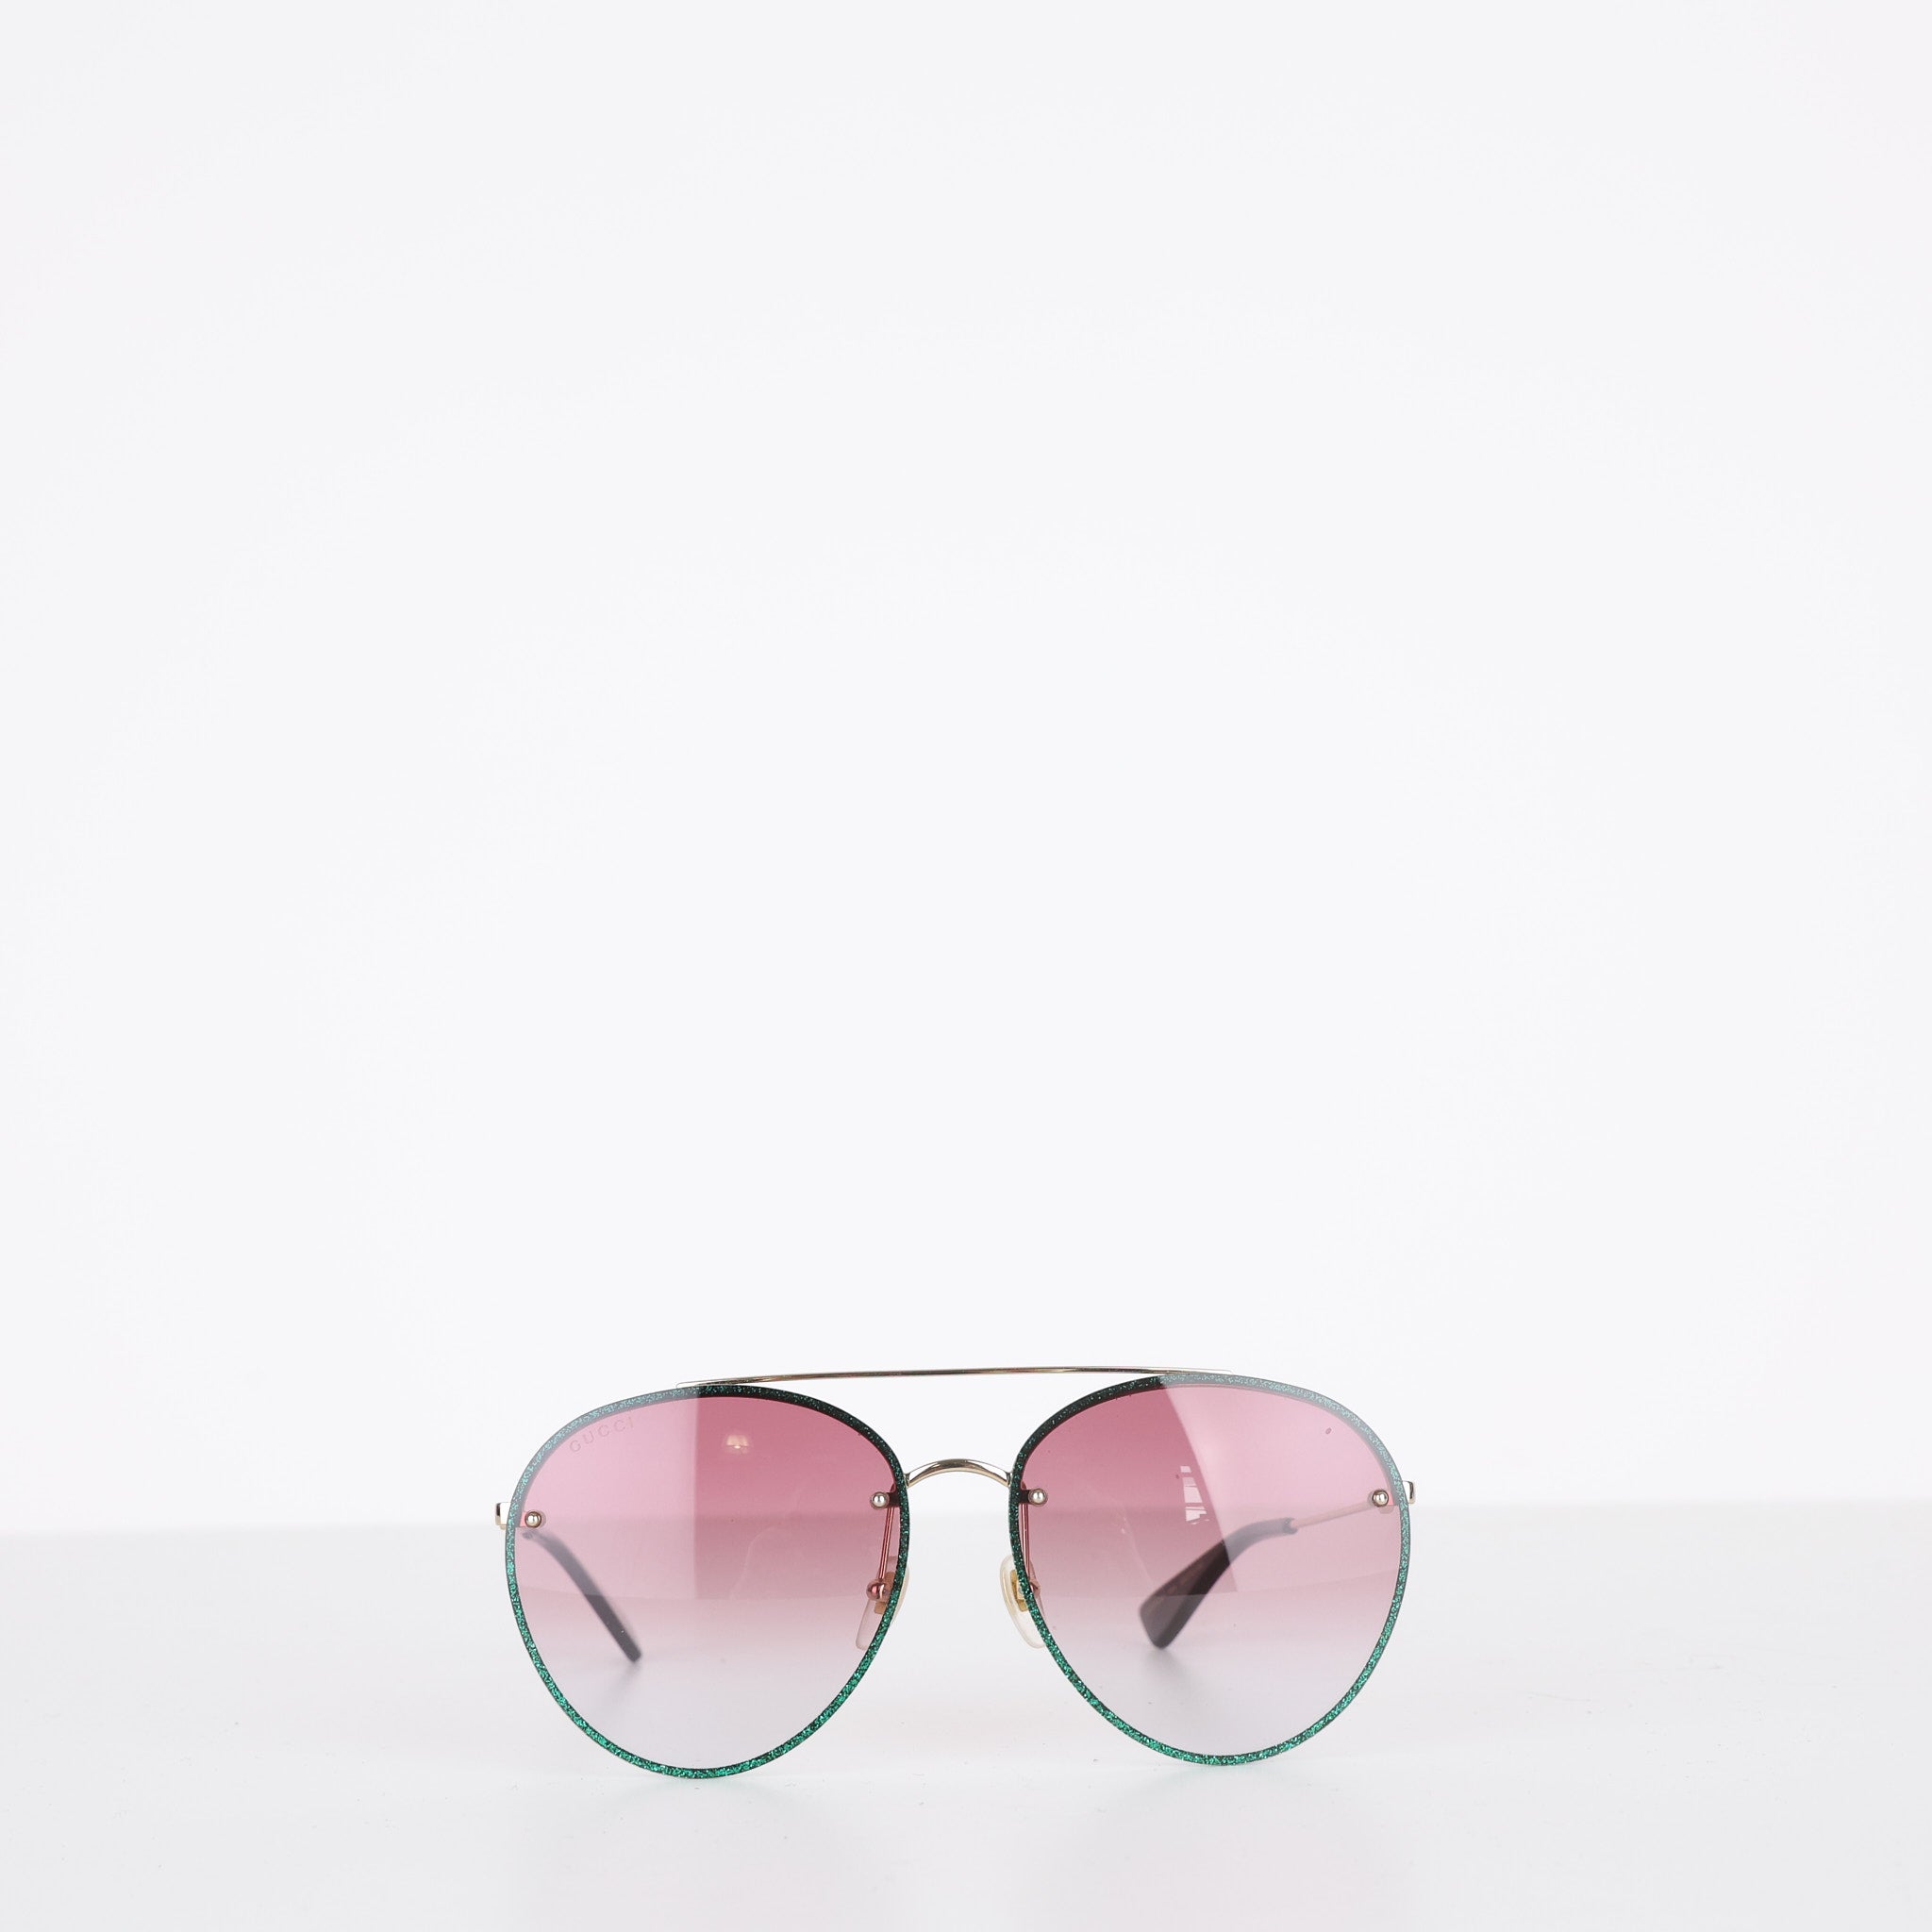 Sunglasses, UK Size One Size